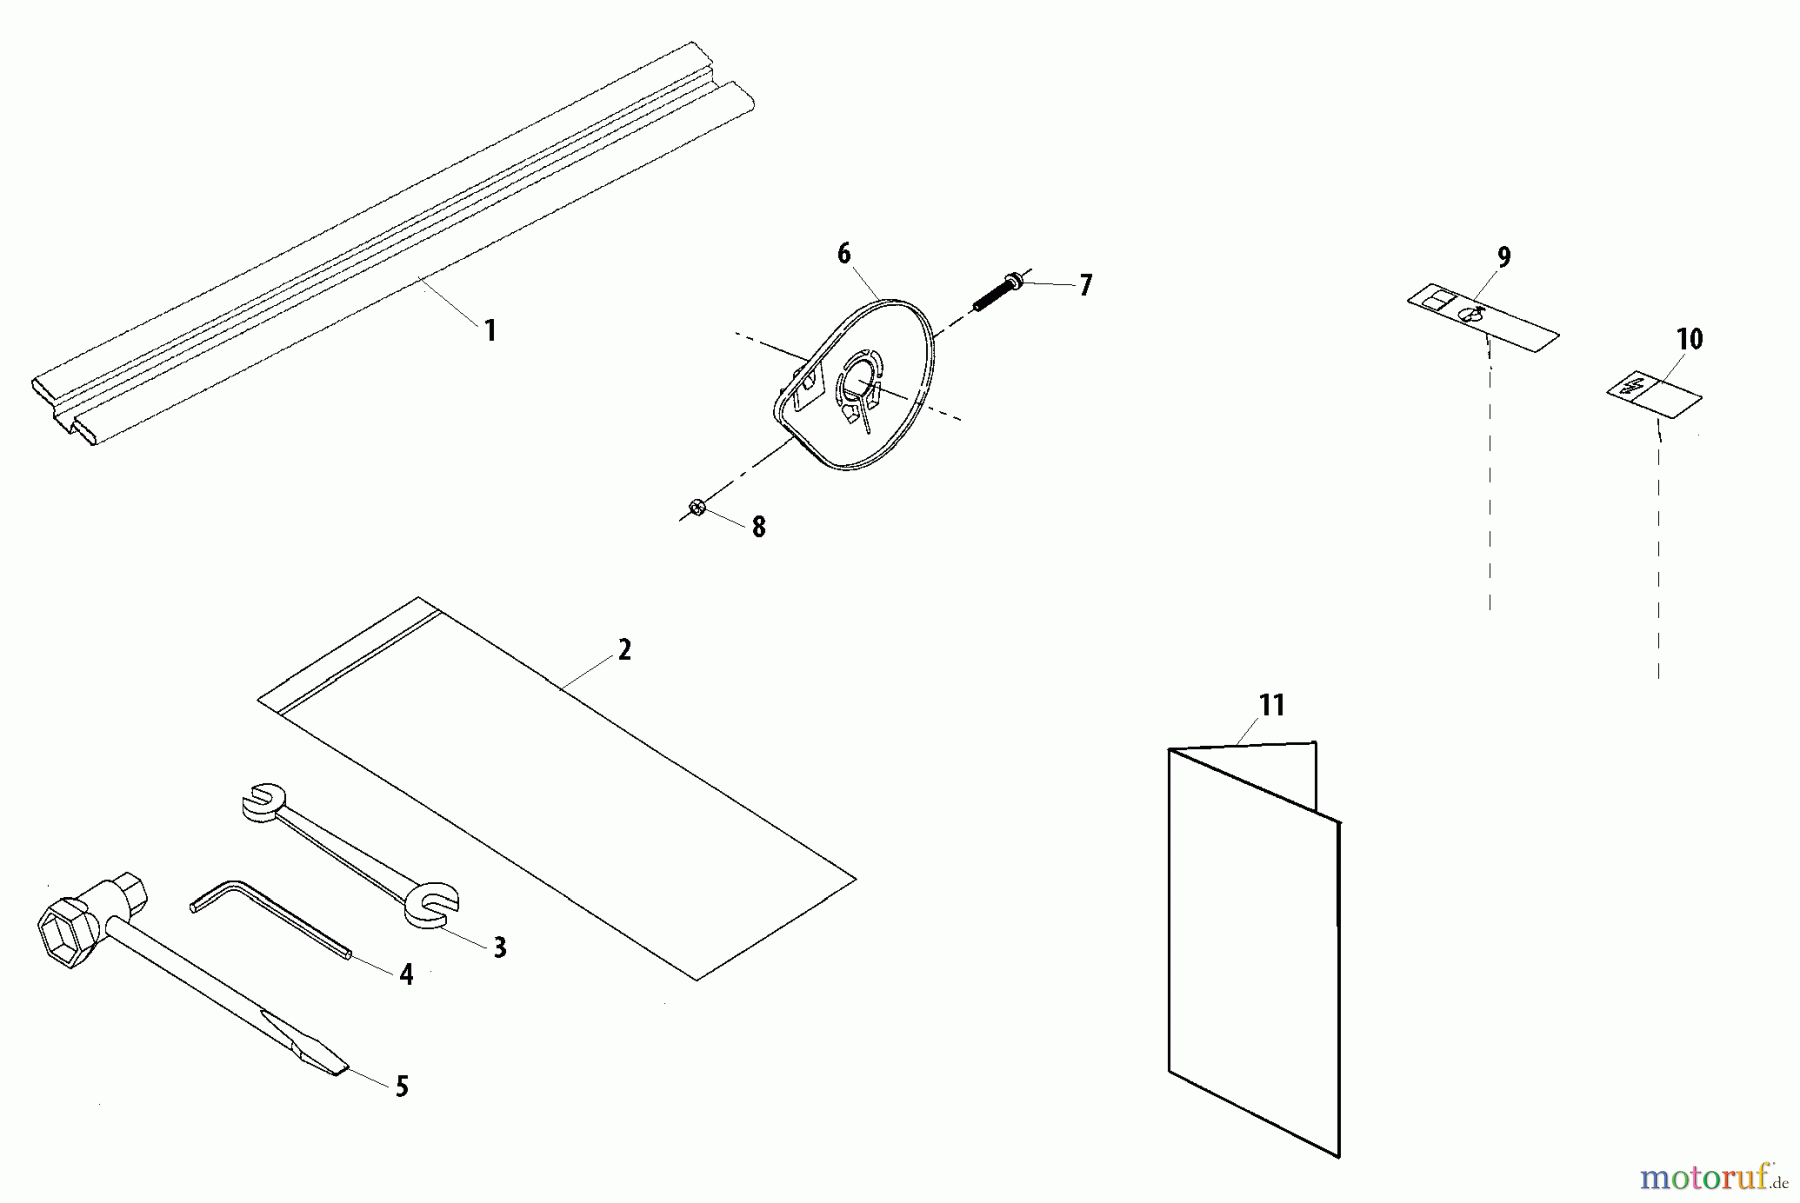  Shindaiwa Trimmer, Faden / Bürste 78701 - Shindaiwa Articulating Hedge Trimmer Attachment Accessories (Part 2)